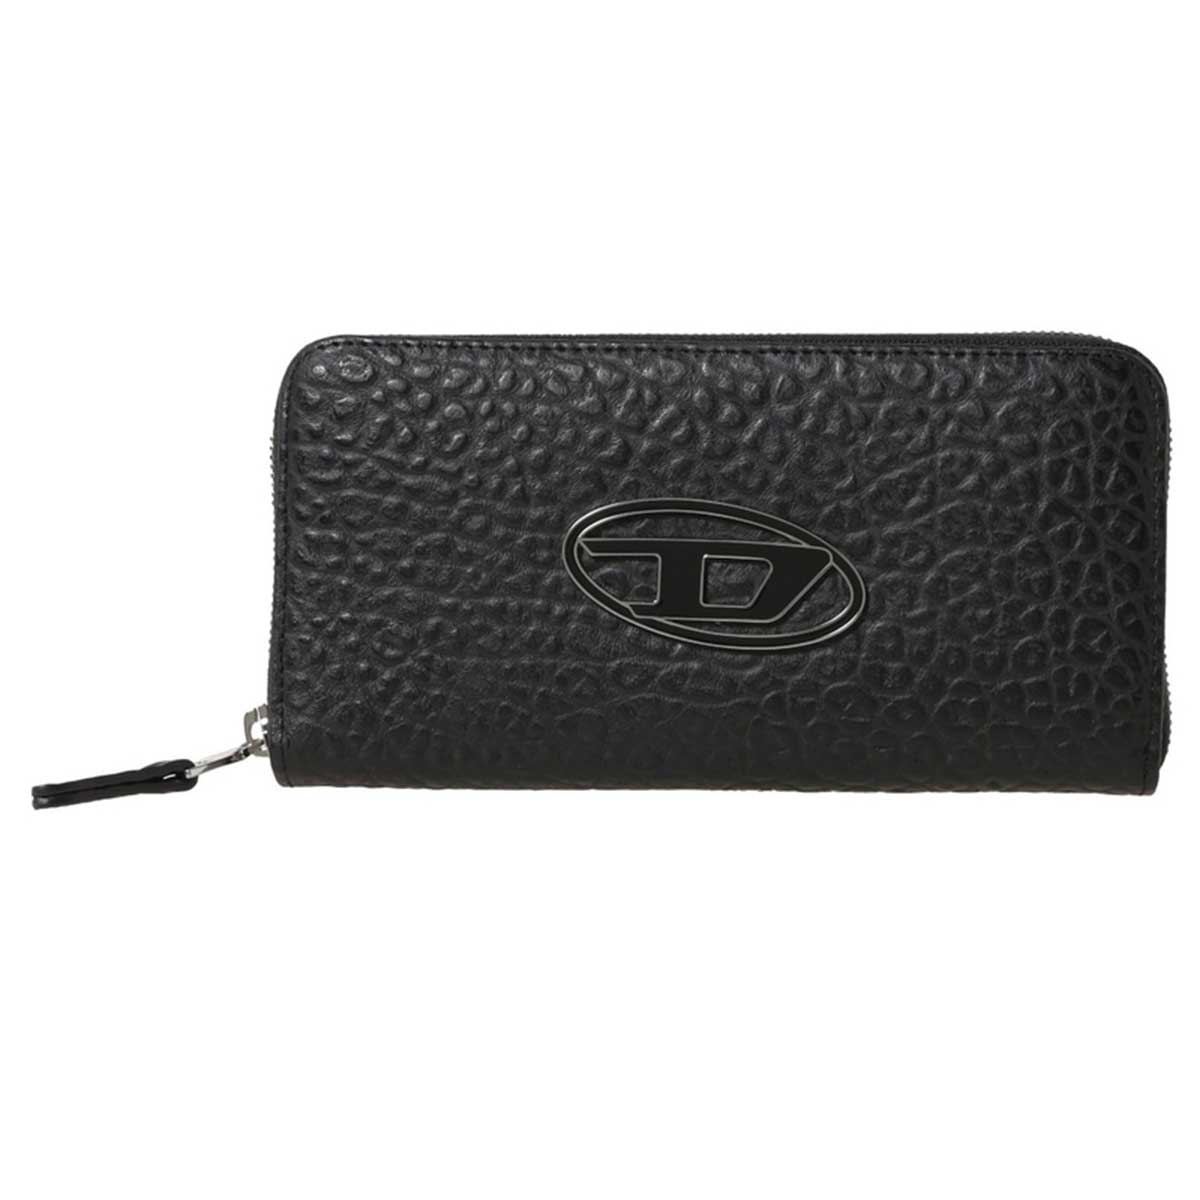 ディーゼル DIESEL 長財布 X08792 P4652 T8013 メンズ ブラック二つ折り長財布 ブランド 財布 おしゃれ 新品ブランド 財布使いやすい 機